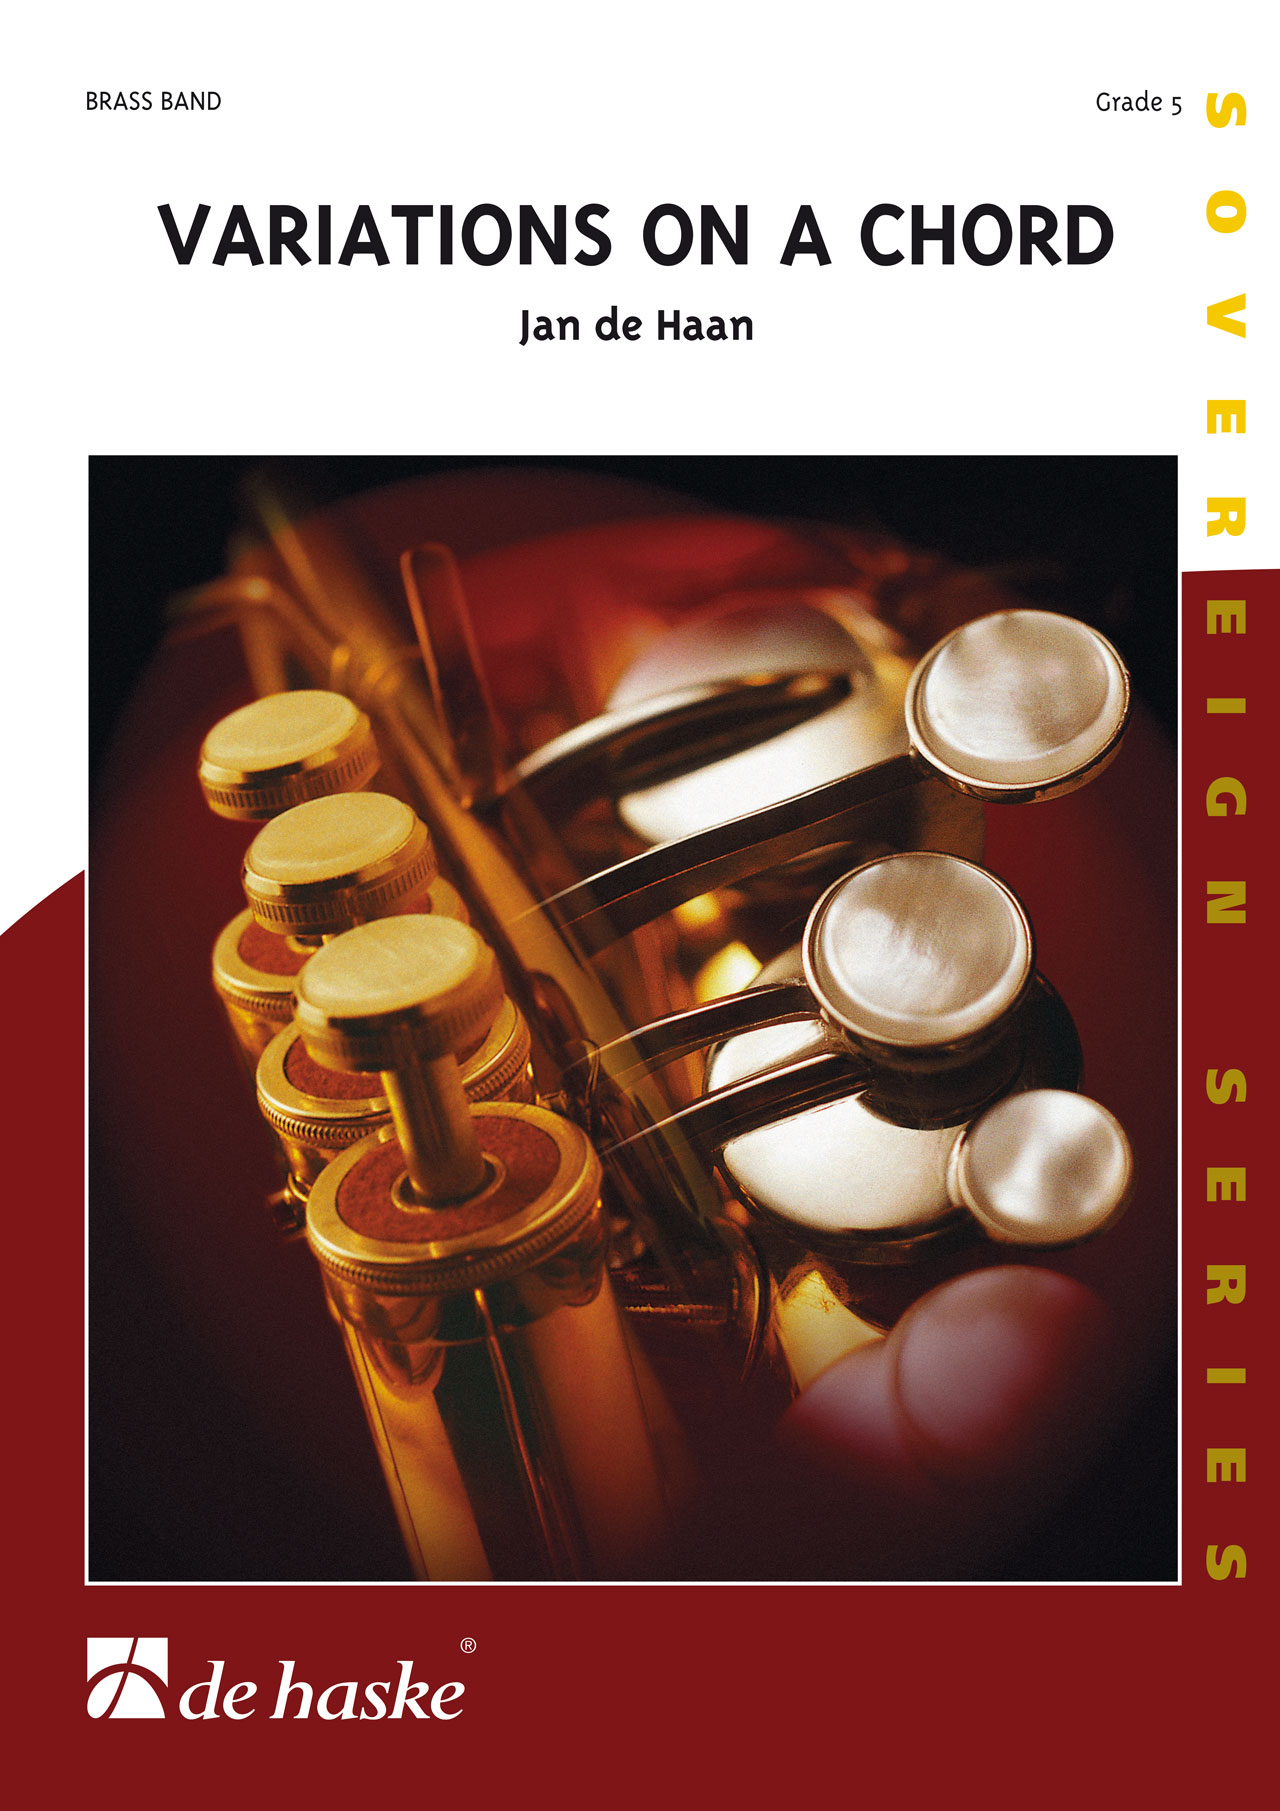 Jan de Haan: Variations on a Chord: Brass Band: Score